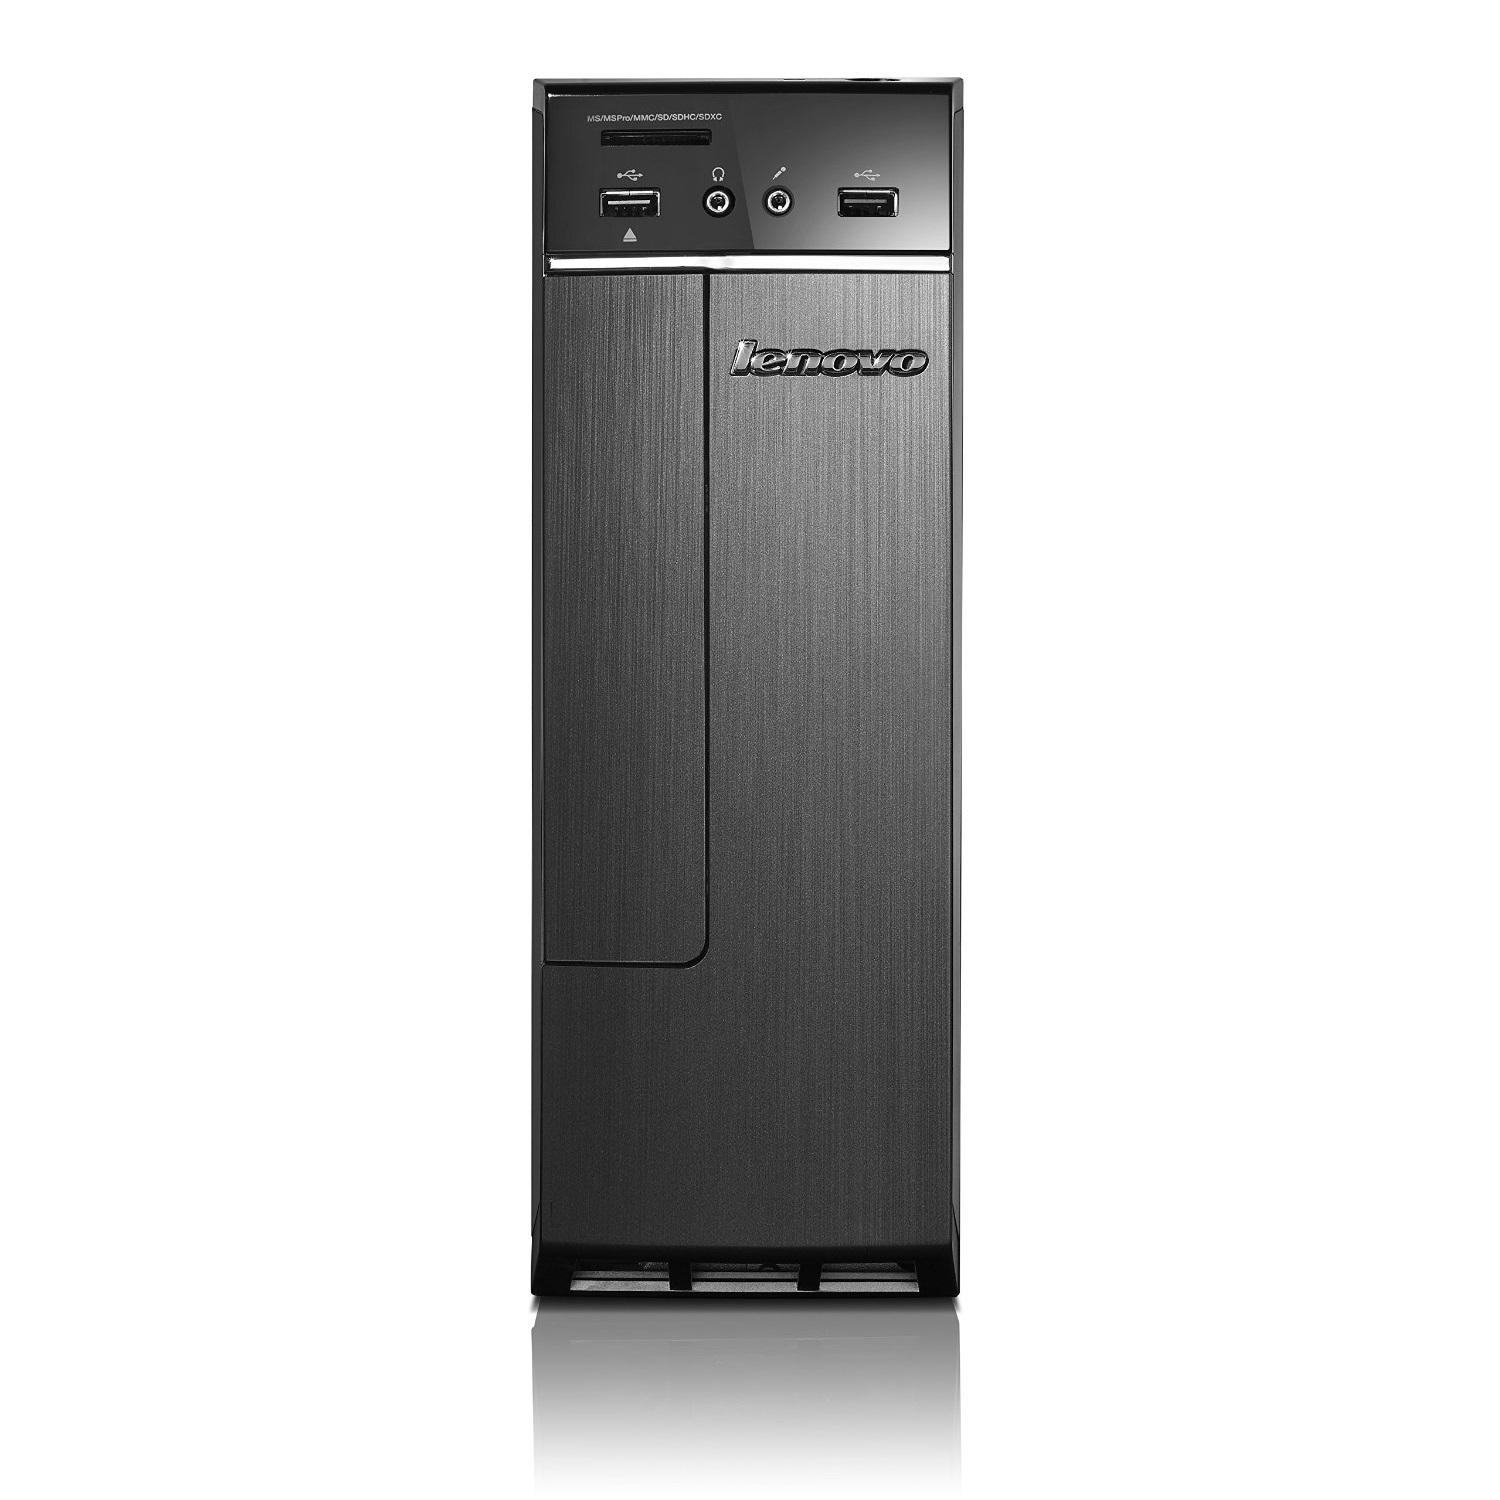 Máy tính để bàn Lenovo H30-50-90B90024VN - Intel Pentium G3250 3.20 GHz, 2GB RAM, 500GB HDD, Intel HD Graphics